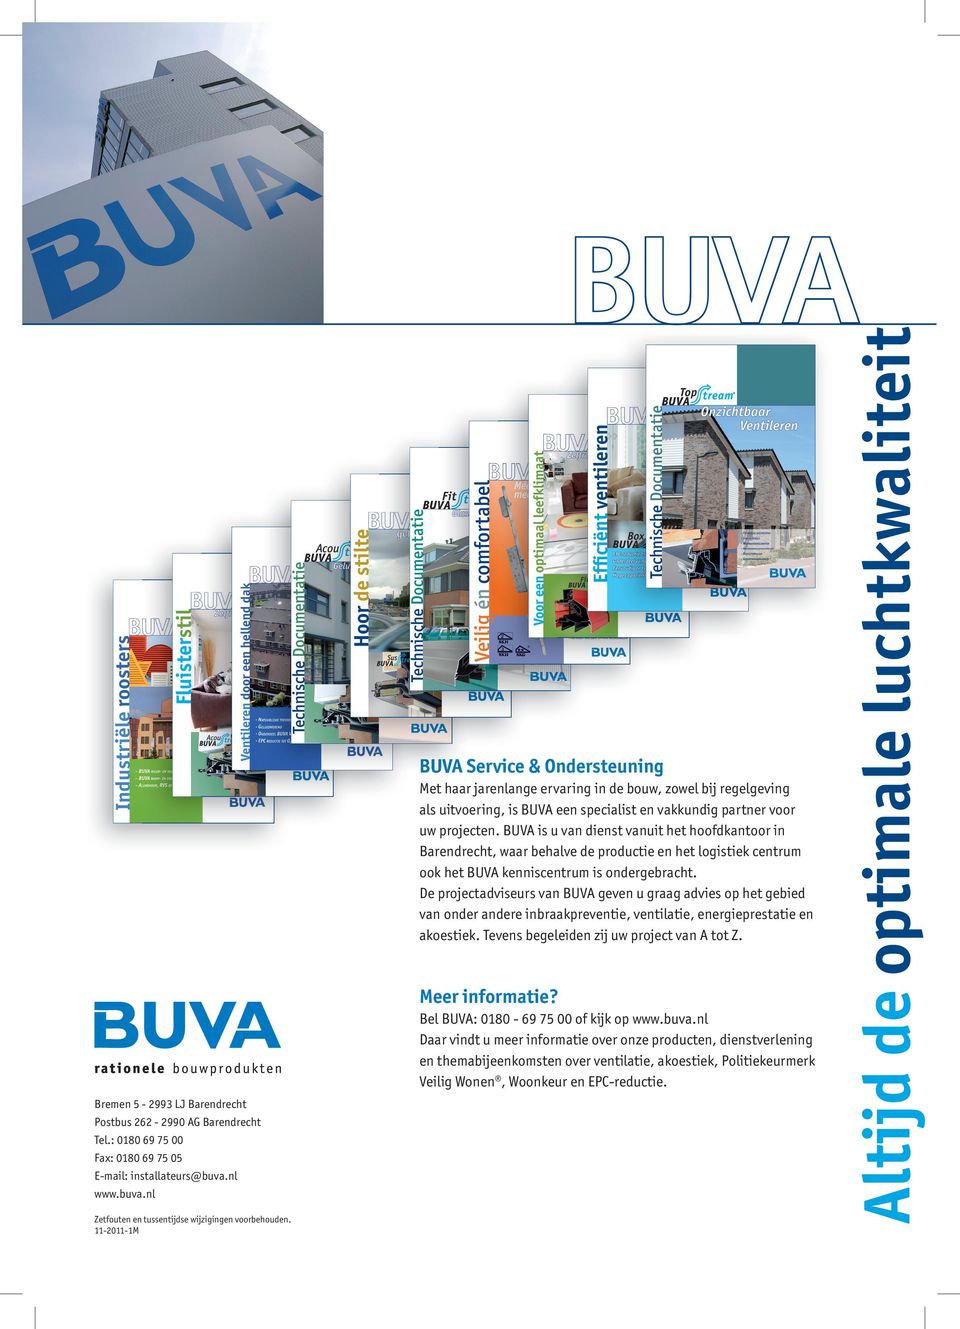 De projectadviseurs van BUVA geven u graag advies op het gebied van onder andere inbraakpreventie, ventilatie, energieprestatie en akoestiek. Tevens begeleiden zij uw project van A tot Z.